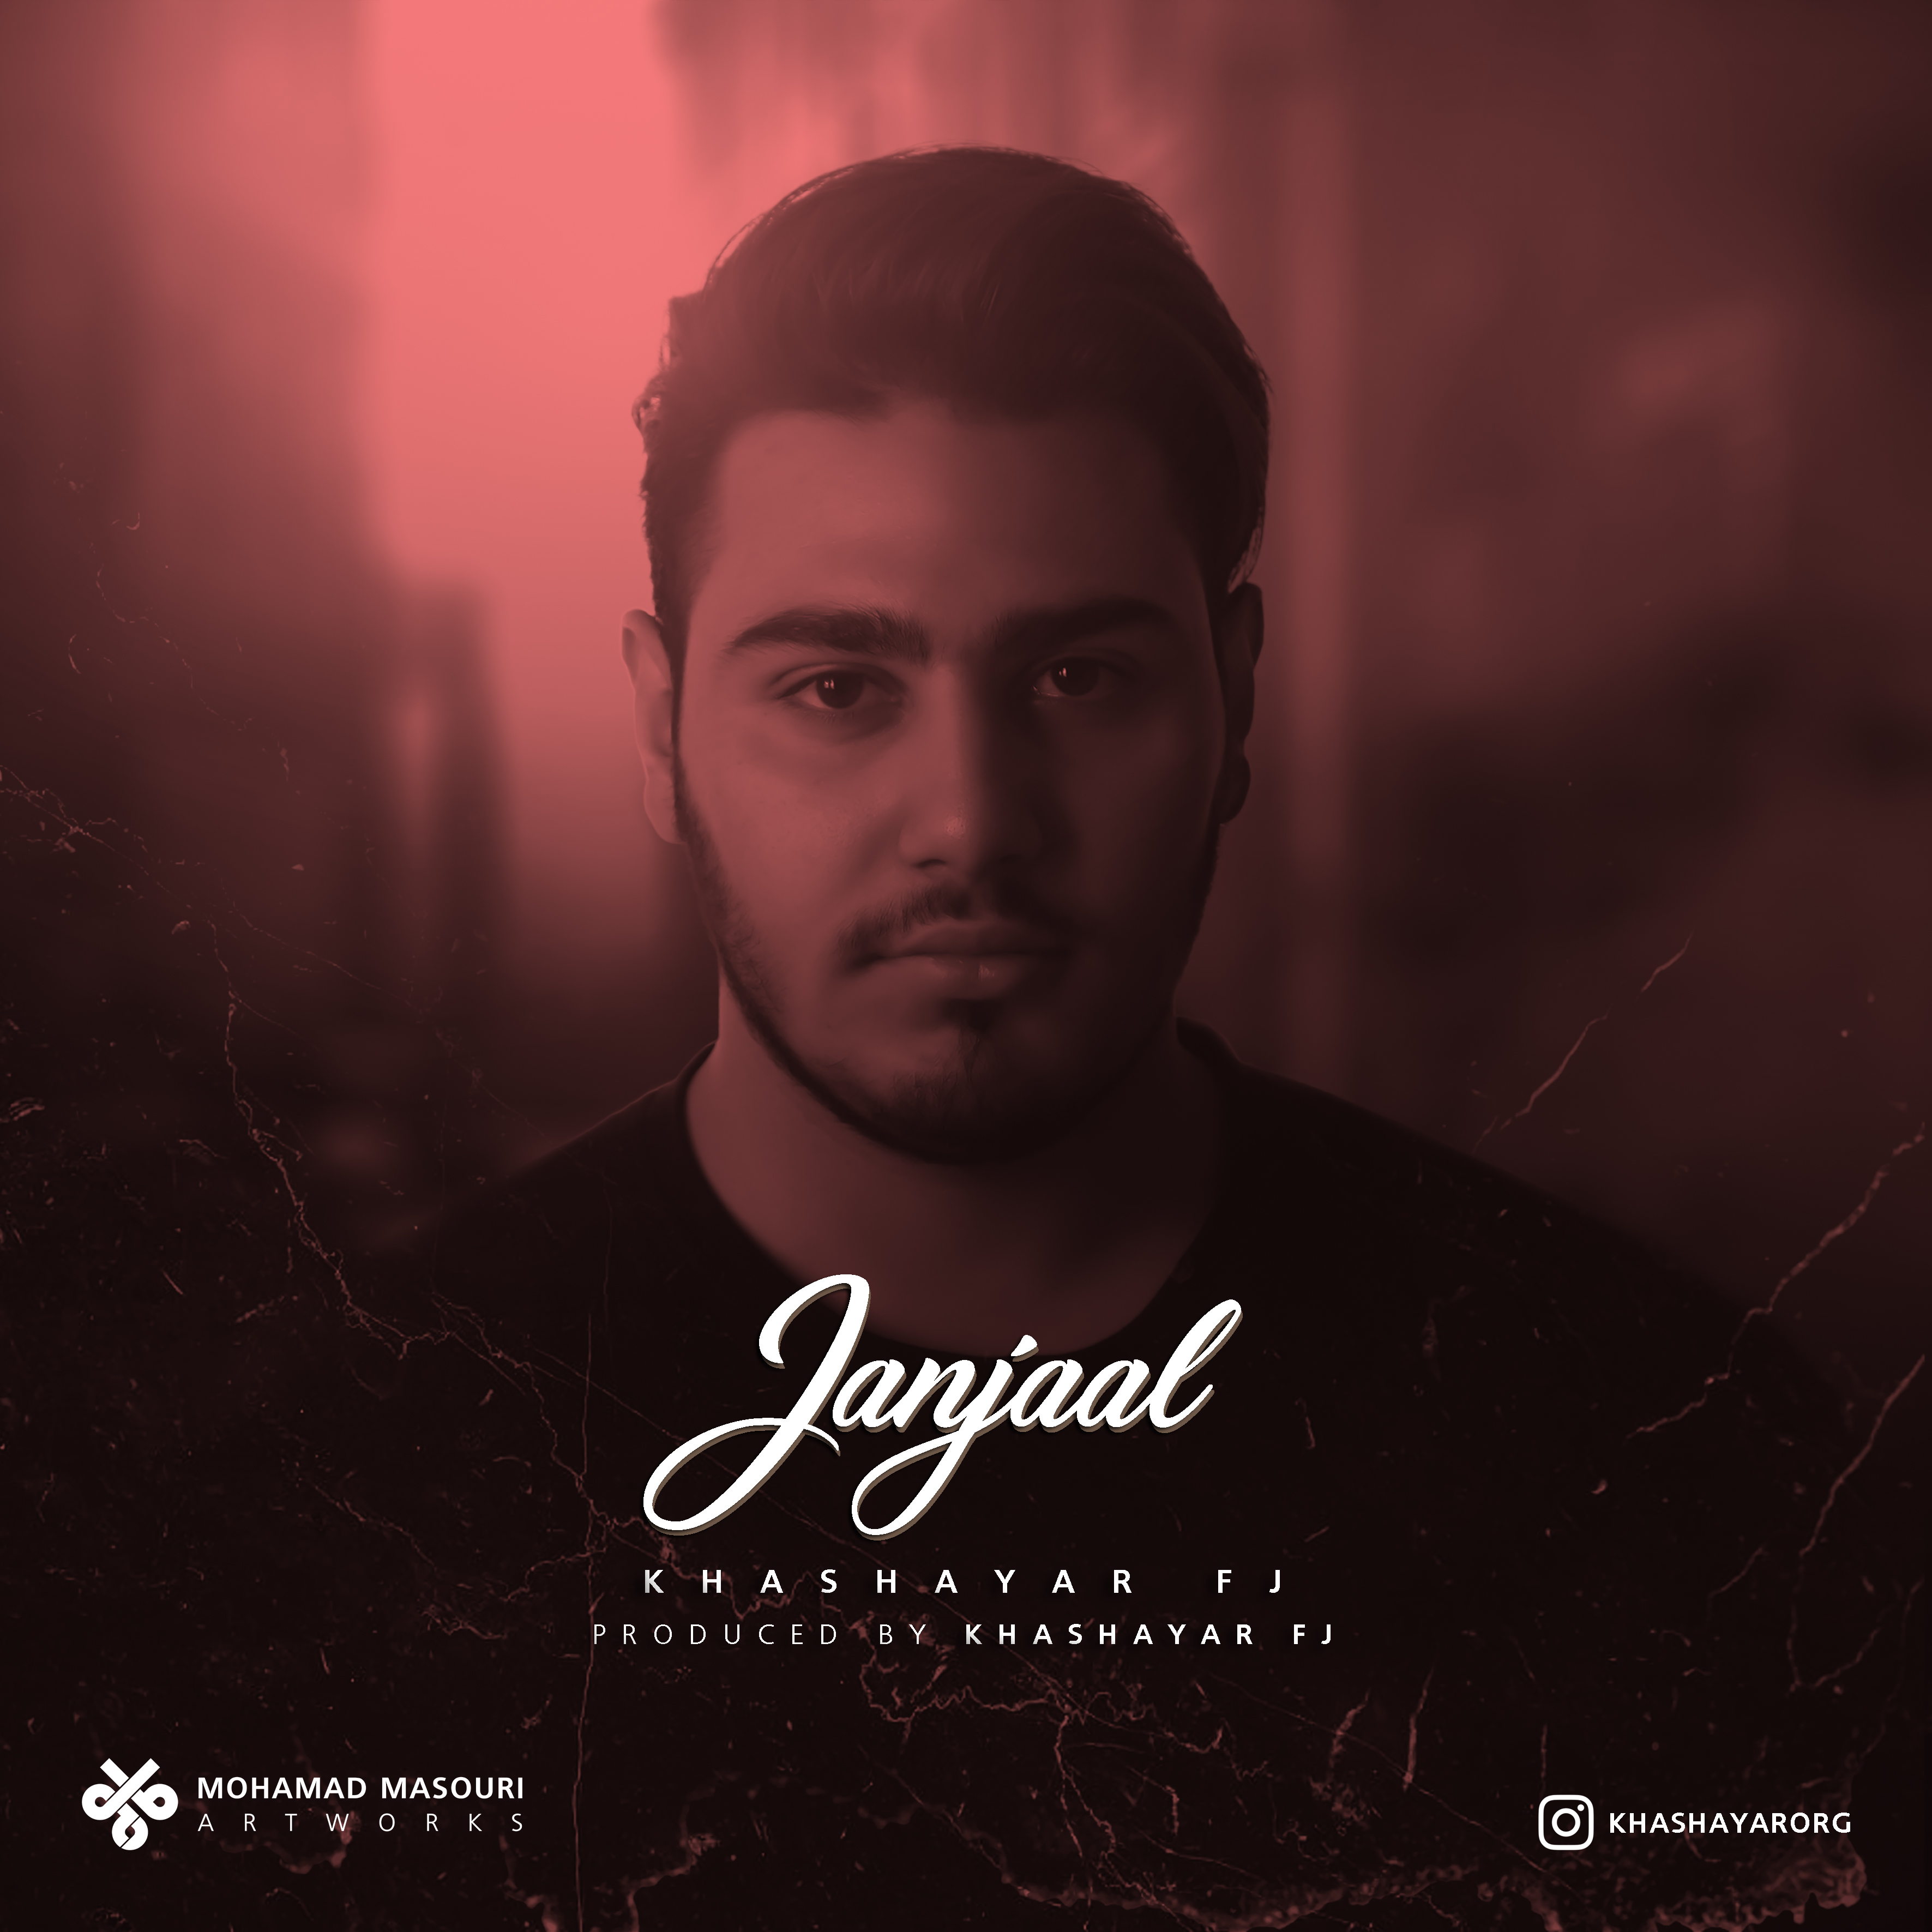  دانلود آهنگ جدید خشایار اف جی - جنجال | Download New Music By Khashayar FJ - Janjaal